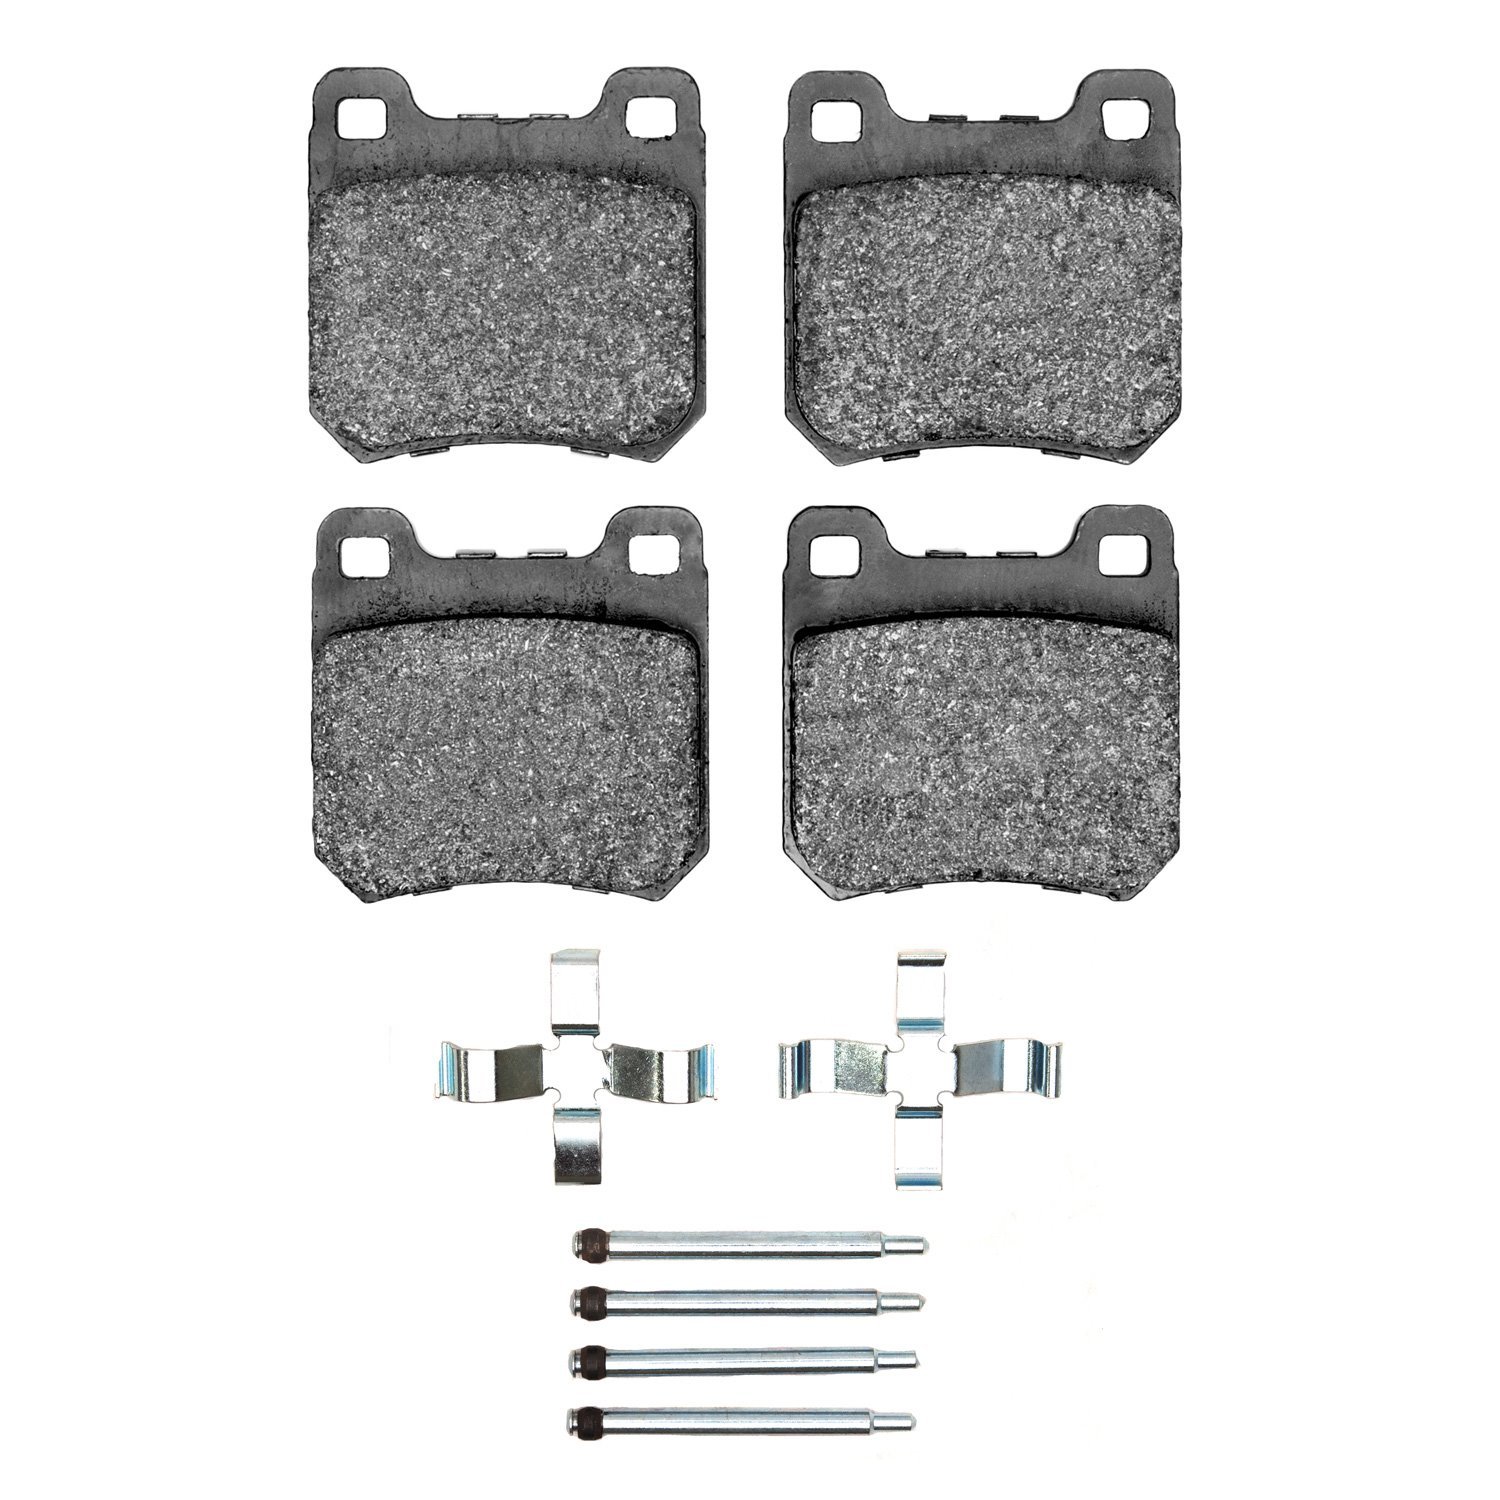 5000 Advanced Low-Metallic Brake Pads & Hardware Kit,